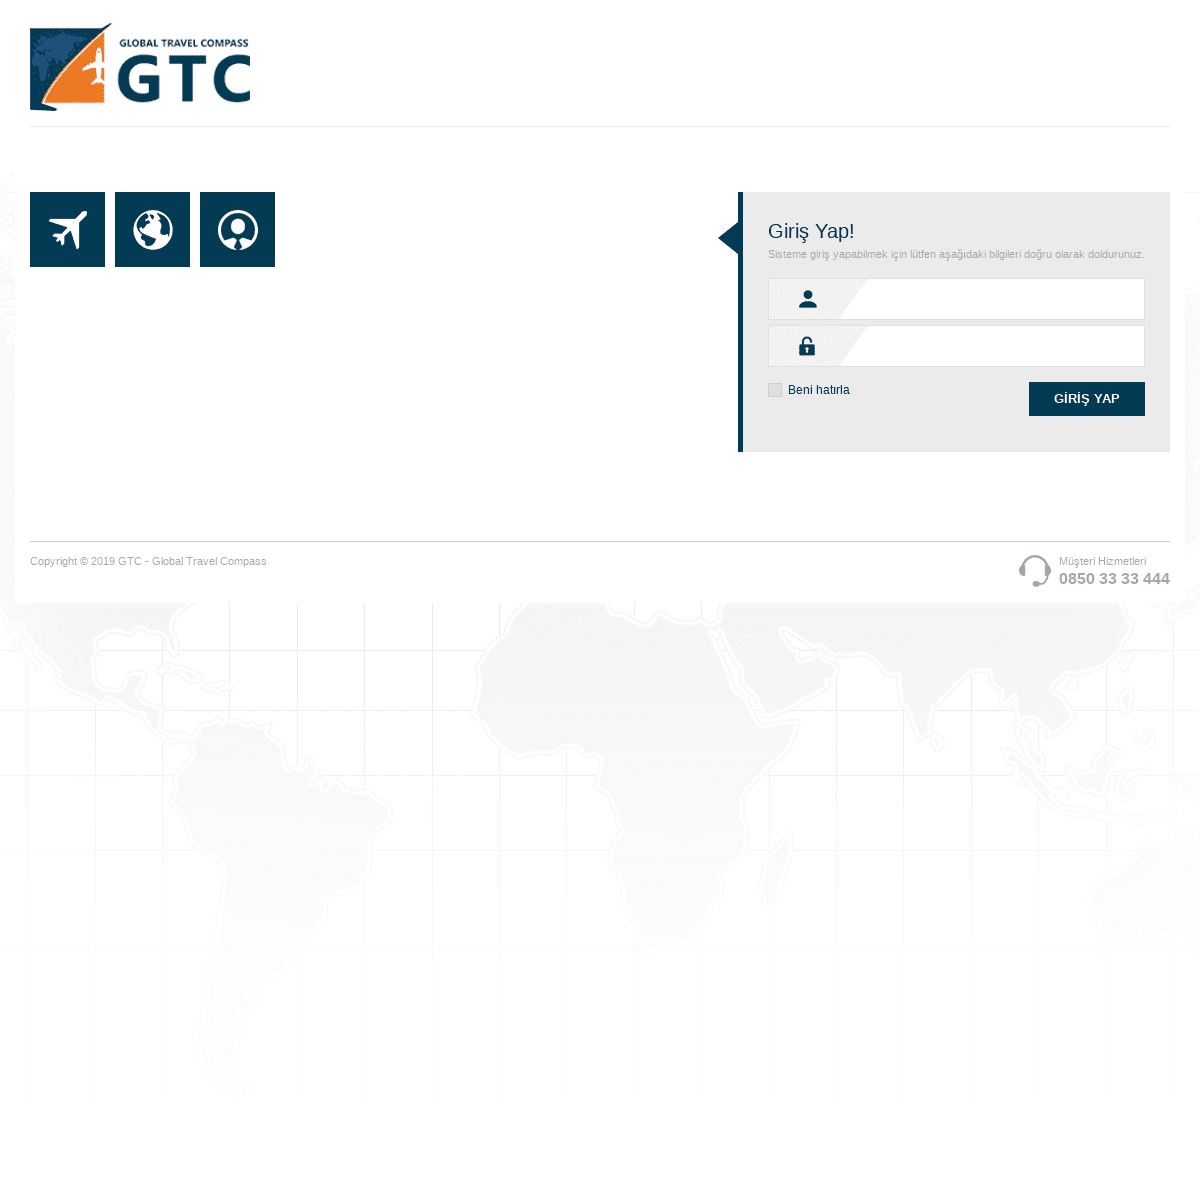 A complete backup of gtcreservation.com